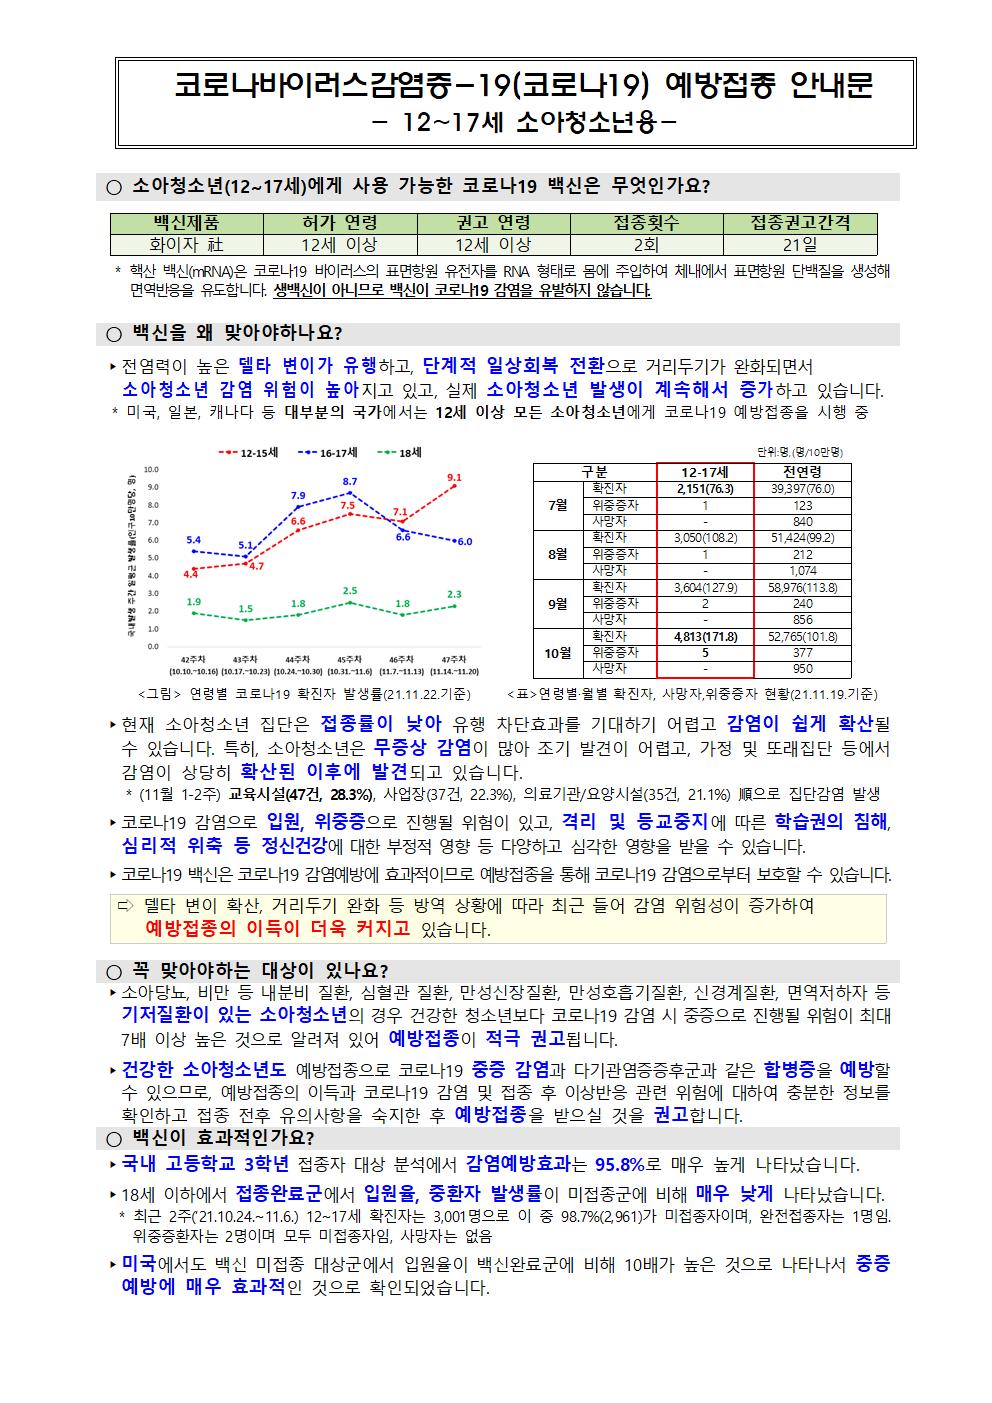 코로나 19 예방접종 추가 안내 가정통신문(11월)002